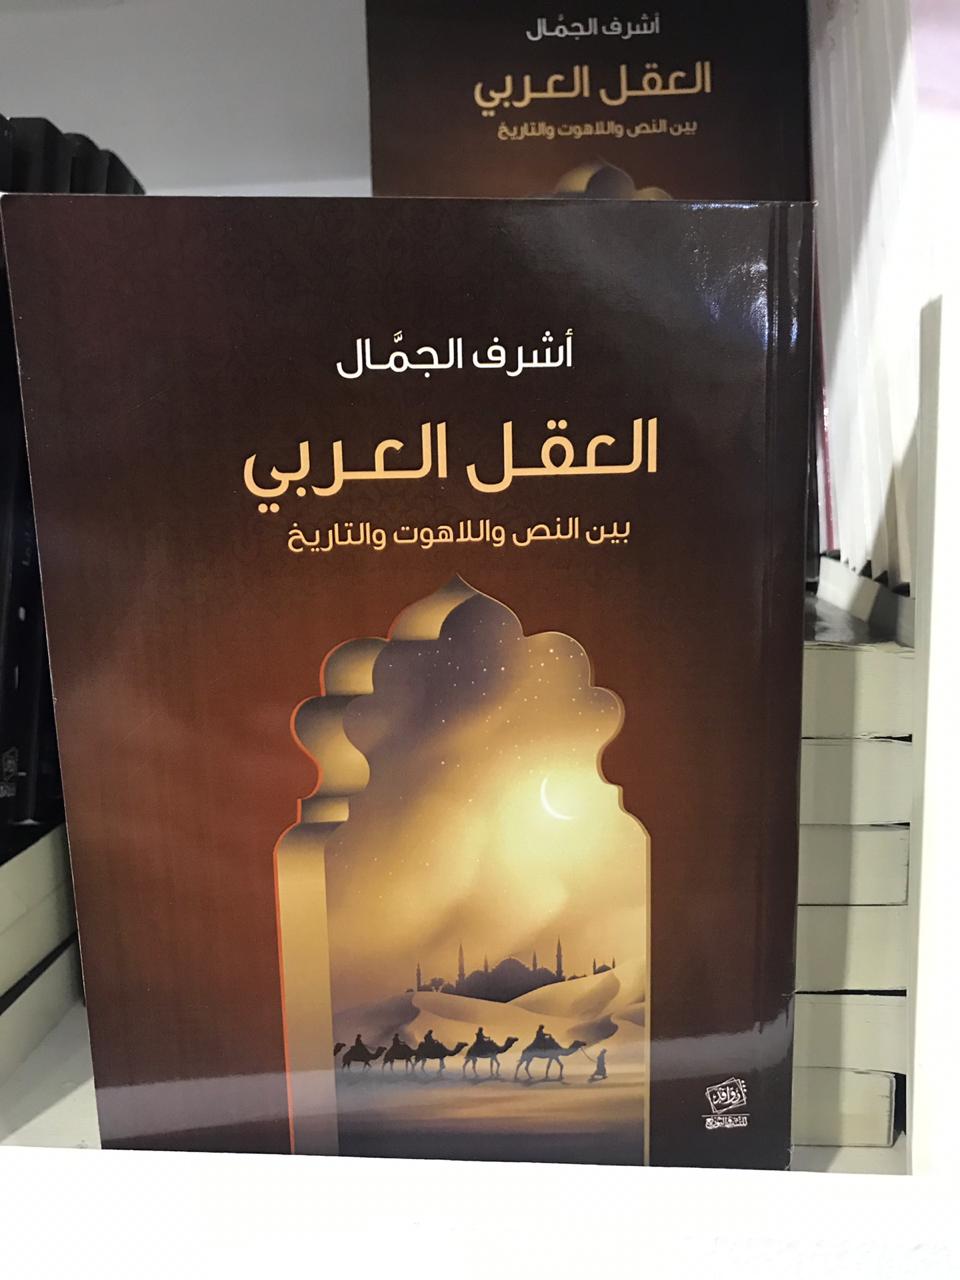 الكتب الأكثر مبيعا فى معرض القاهرة للكتاب (5)